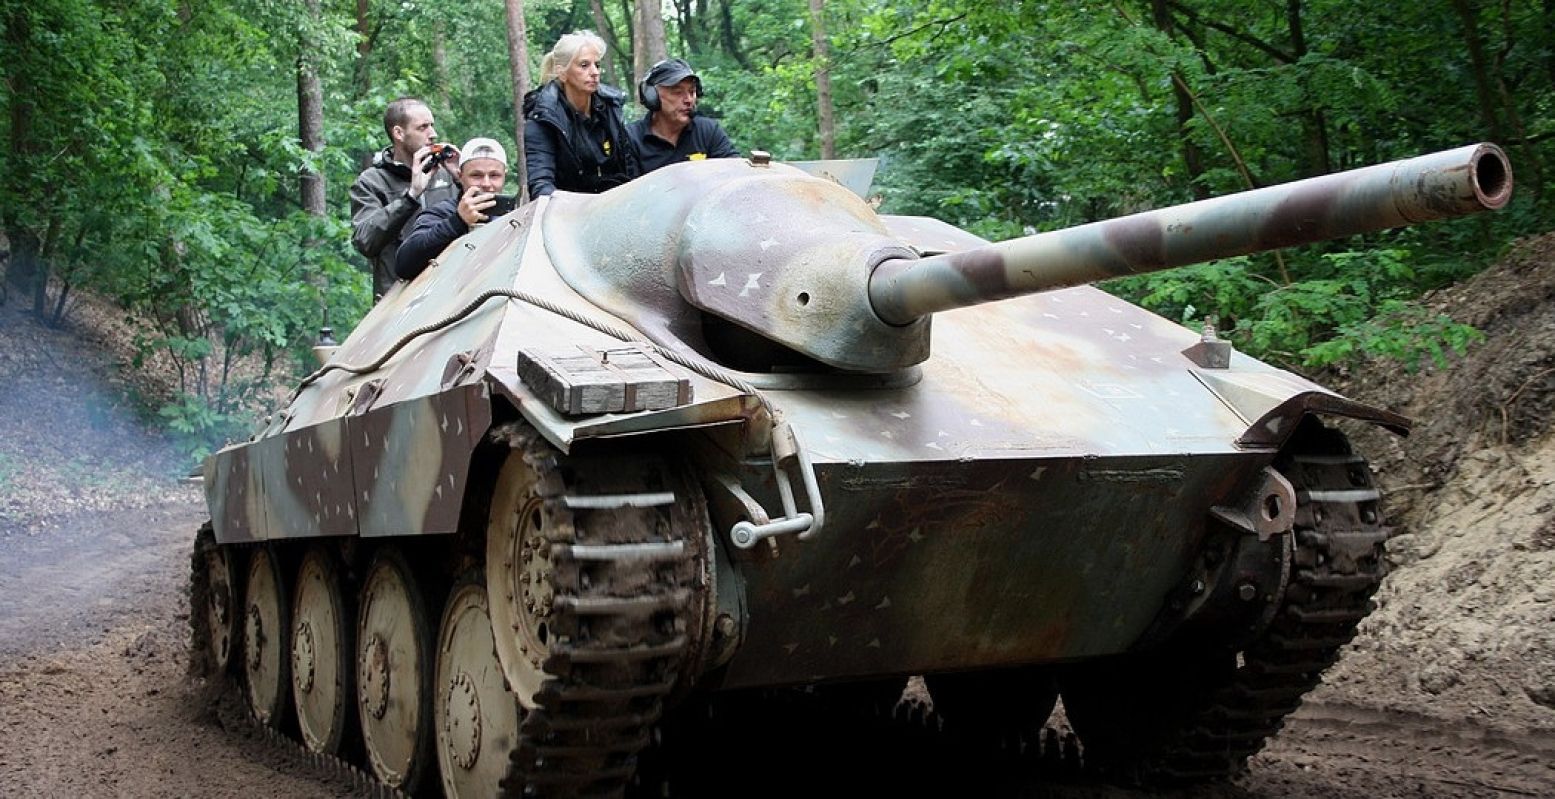 Rij mee op een tank tijdens Militracks. De opbrengst is voor Oekraïne. Foto: Oorlogsmuseum Overloon © Walter Schwabe Hetzer